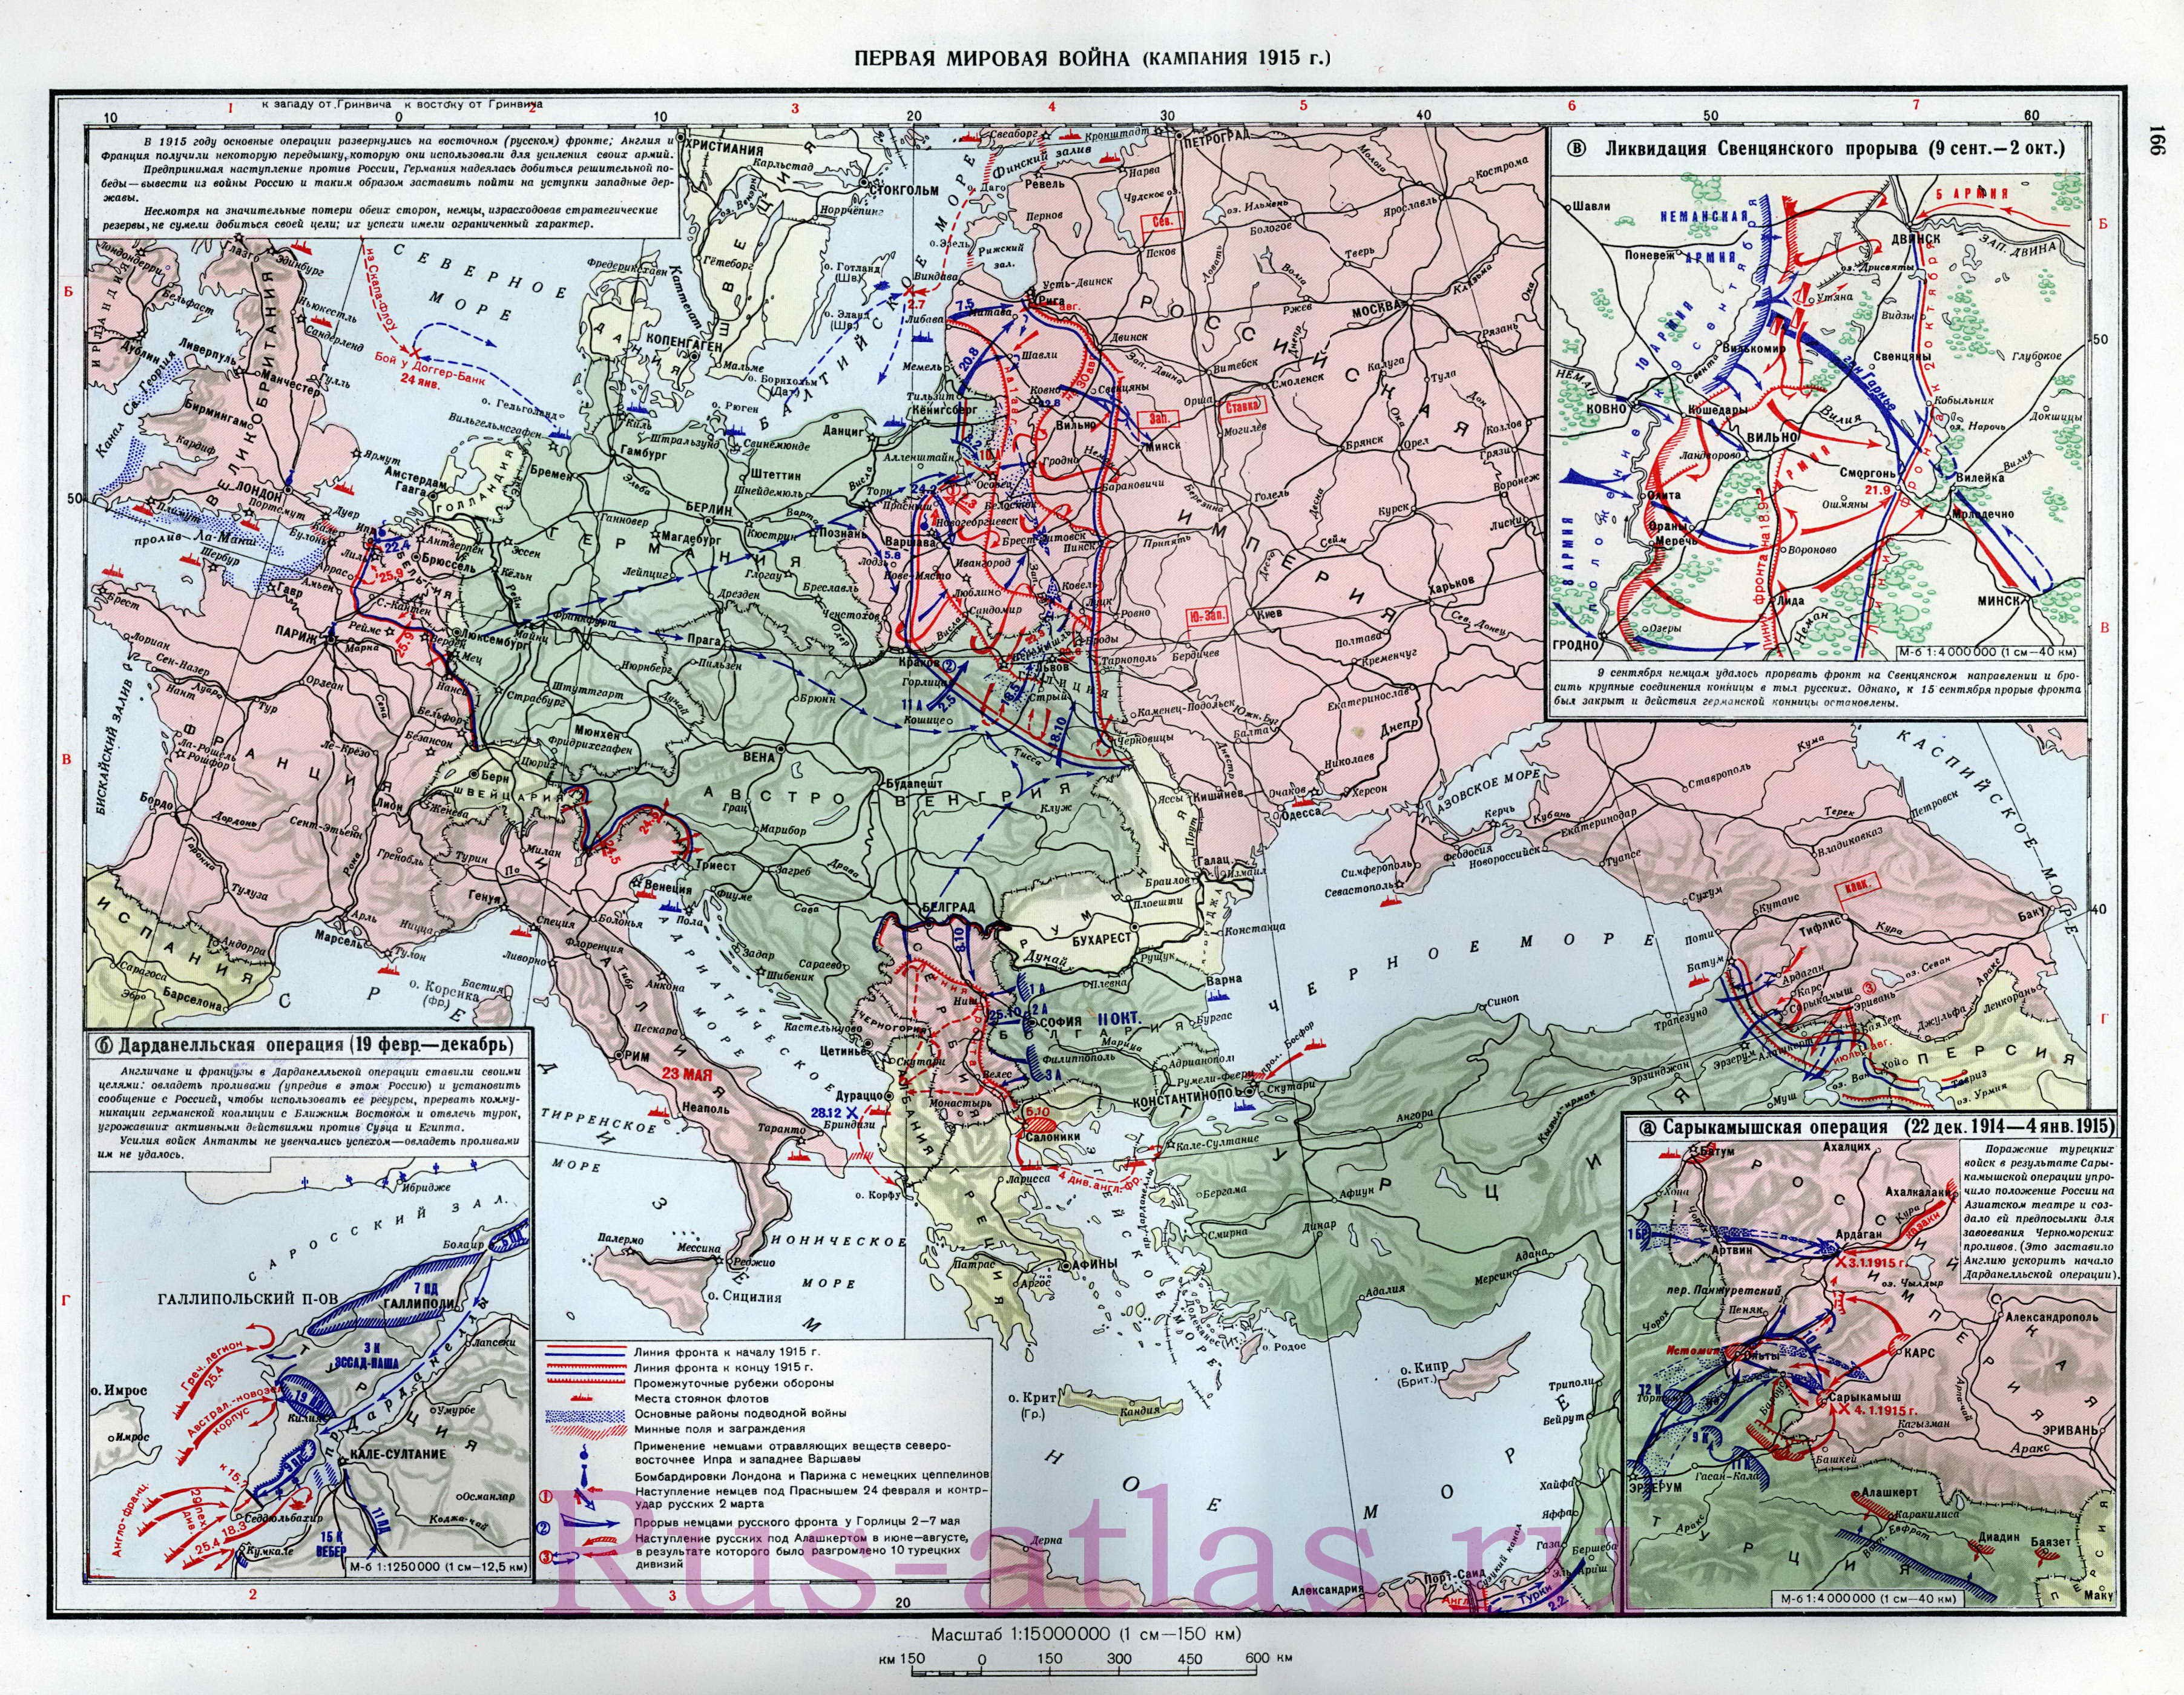 Карта сражений Первой Мировой войны в 1915 году. Подробная карта первой мировой в 1915. Схемы Сарыкамышской операции, Дарданельской операции, ликвидации Свинцянского прорыва, A0 - 